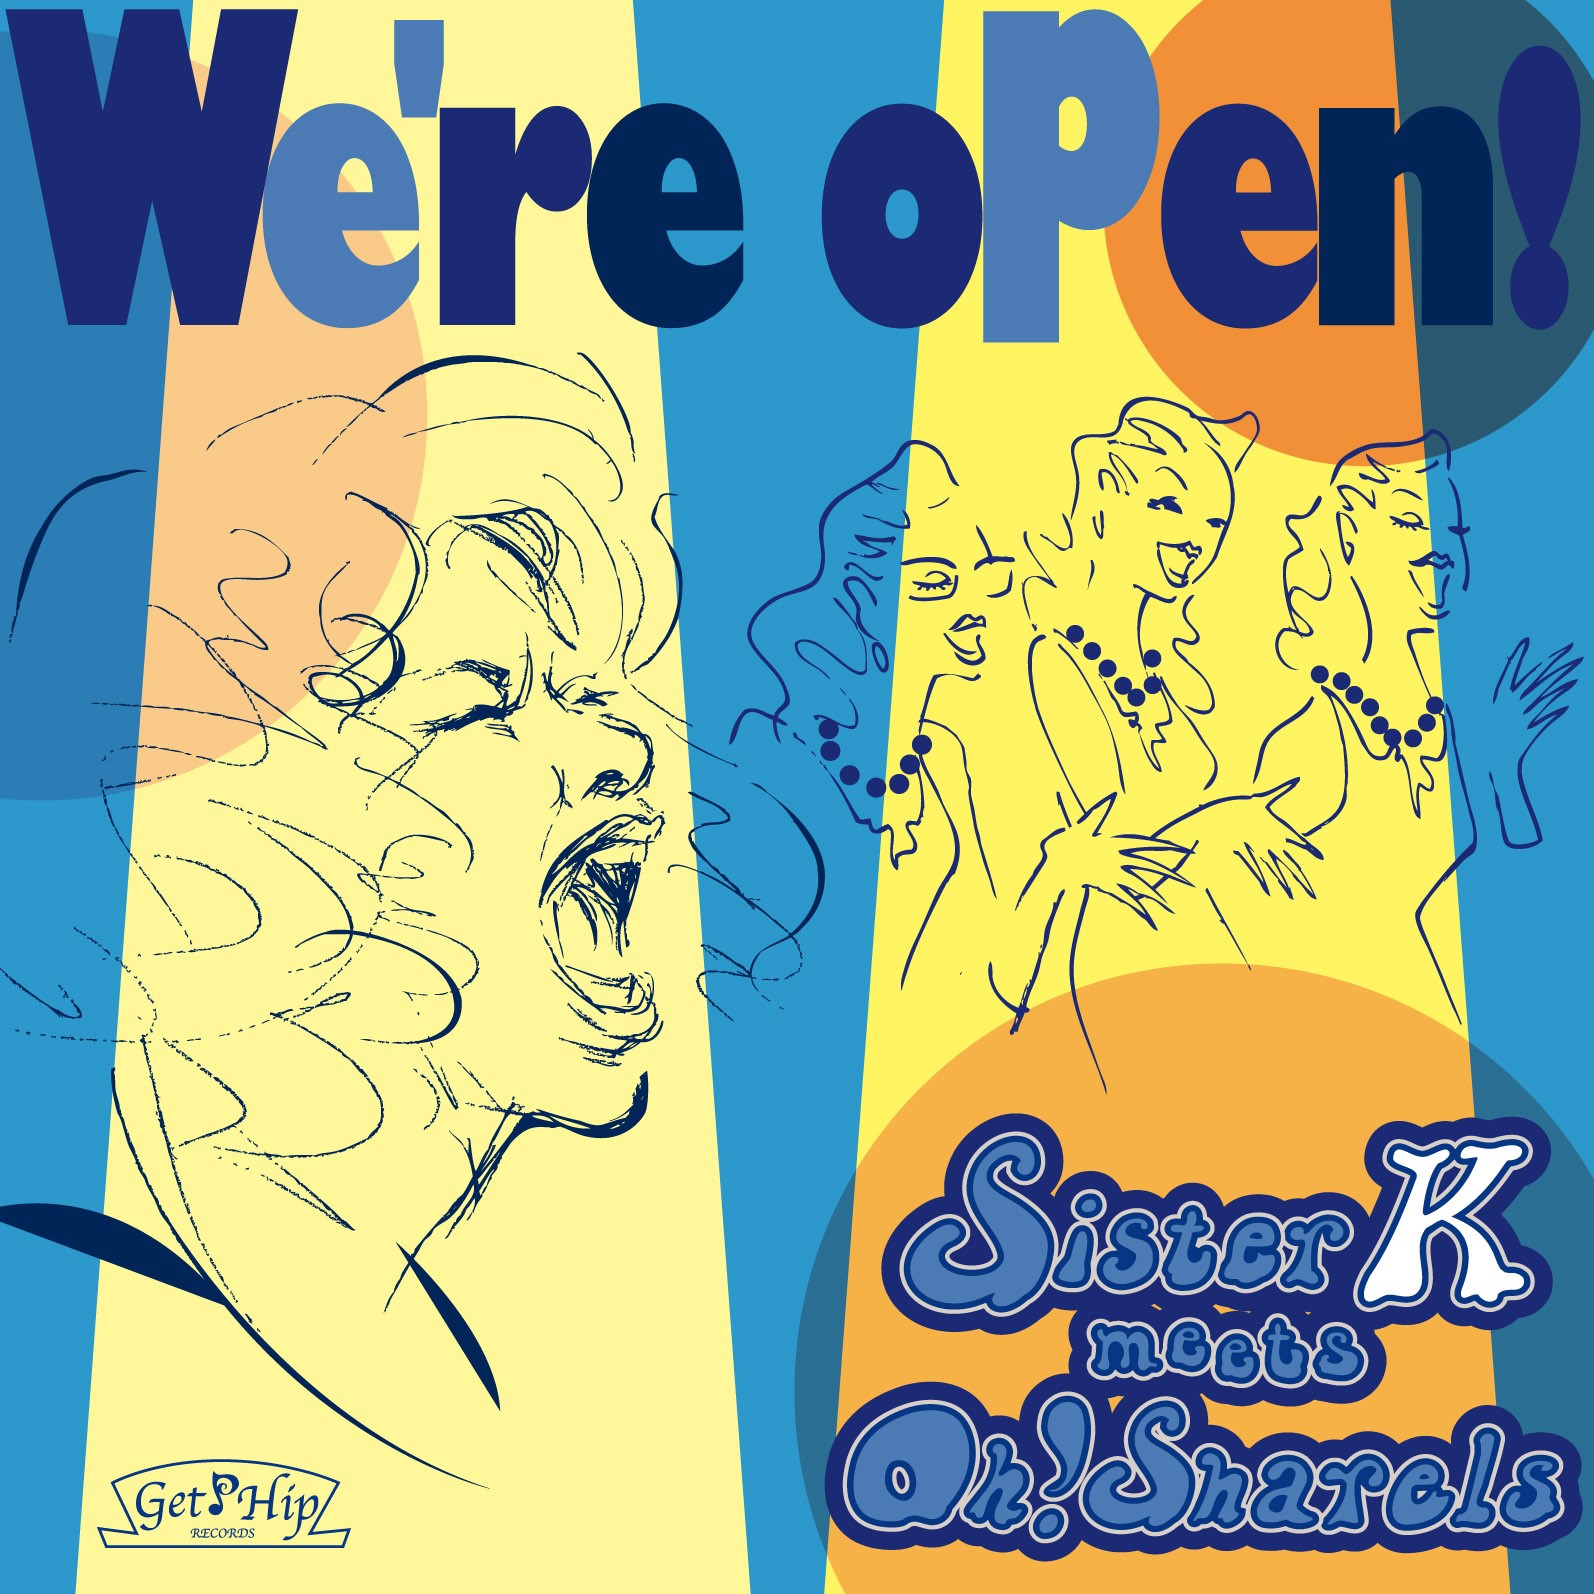 『We're open!』